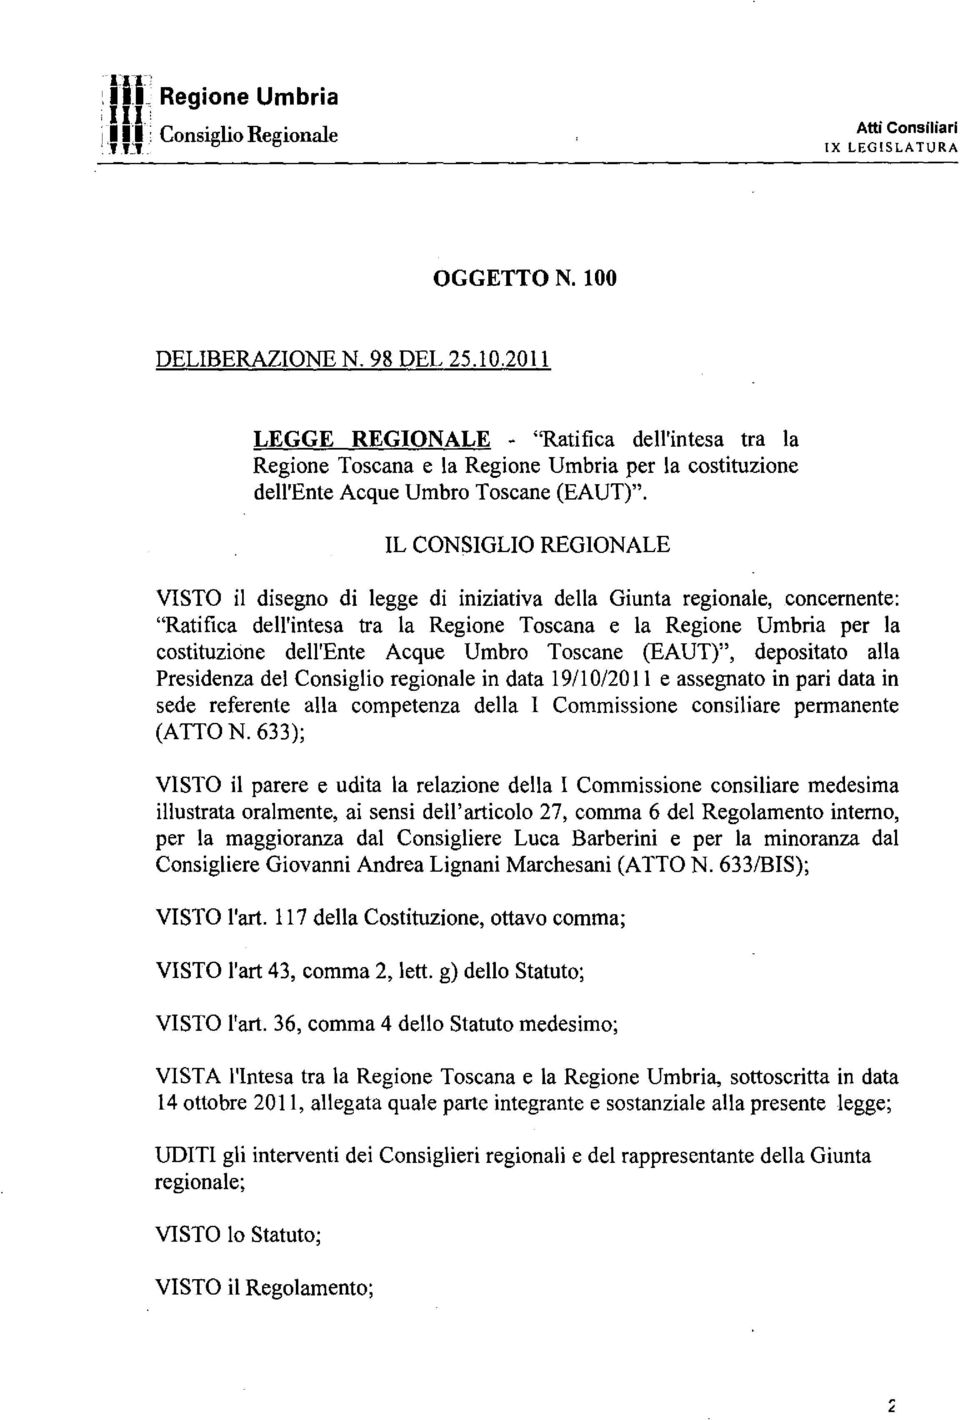 IL CONSIGLIO REGIONALE ISTO il disegno di legge di iniziatia della Giunta regionale, concernente: "Ratifica dell'intesa tra la Regione Toscana e la Regione Umbria per la costituzione dell'ente Acque